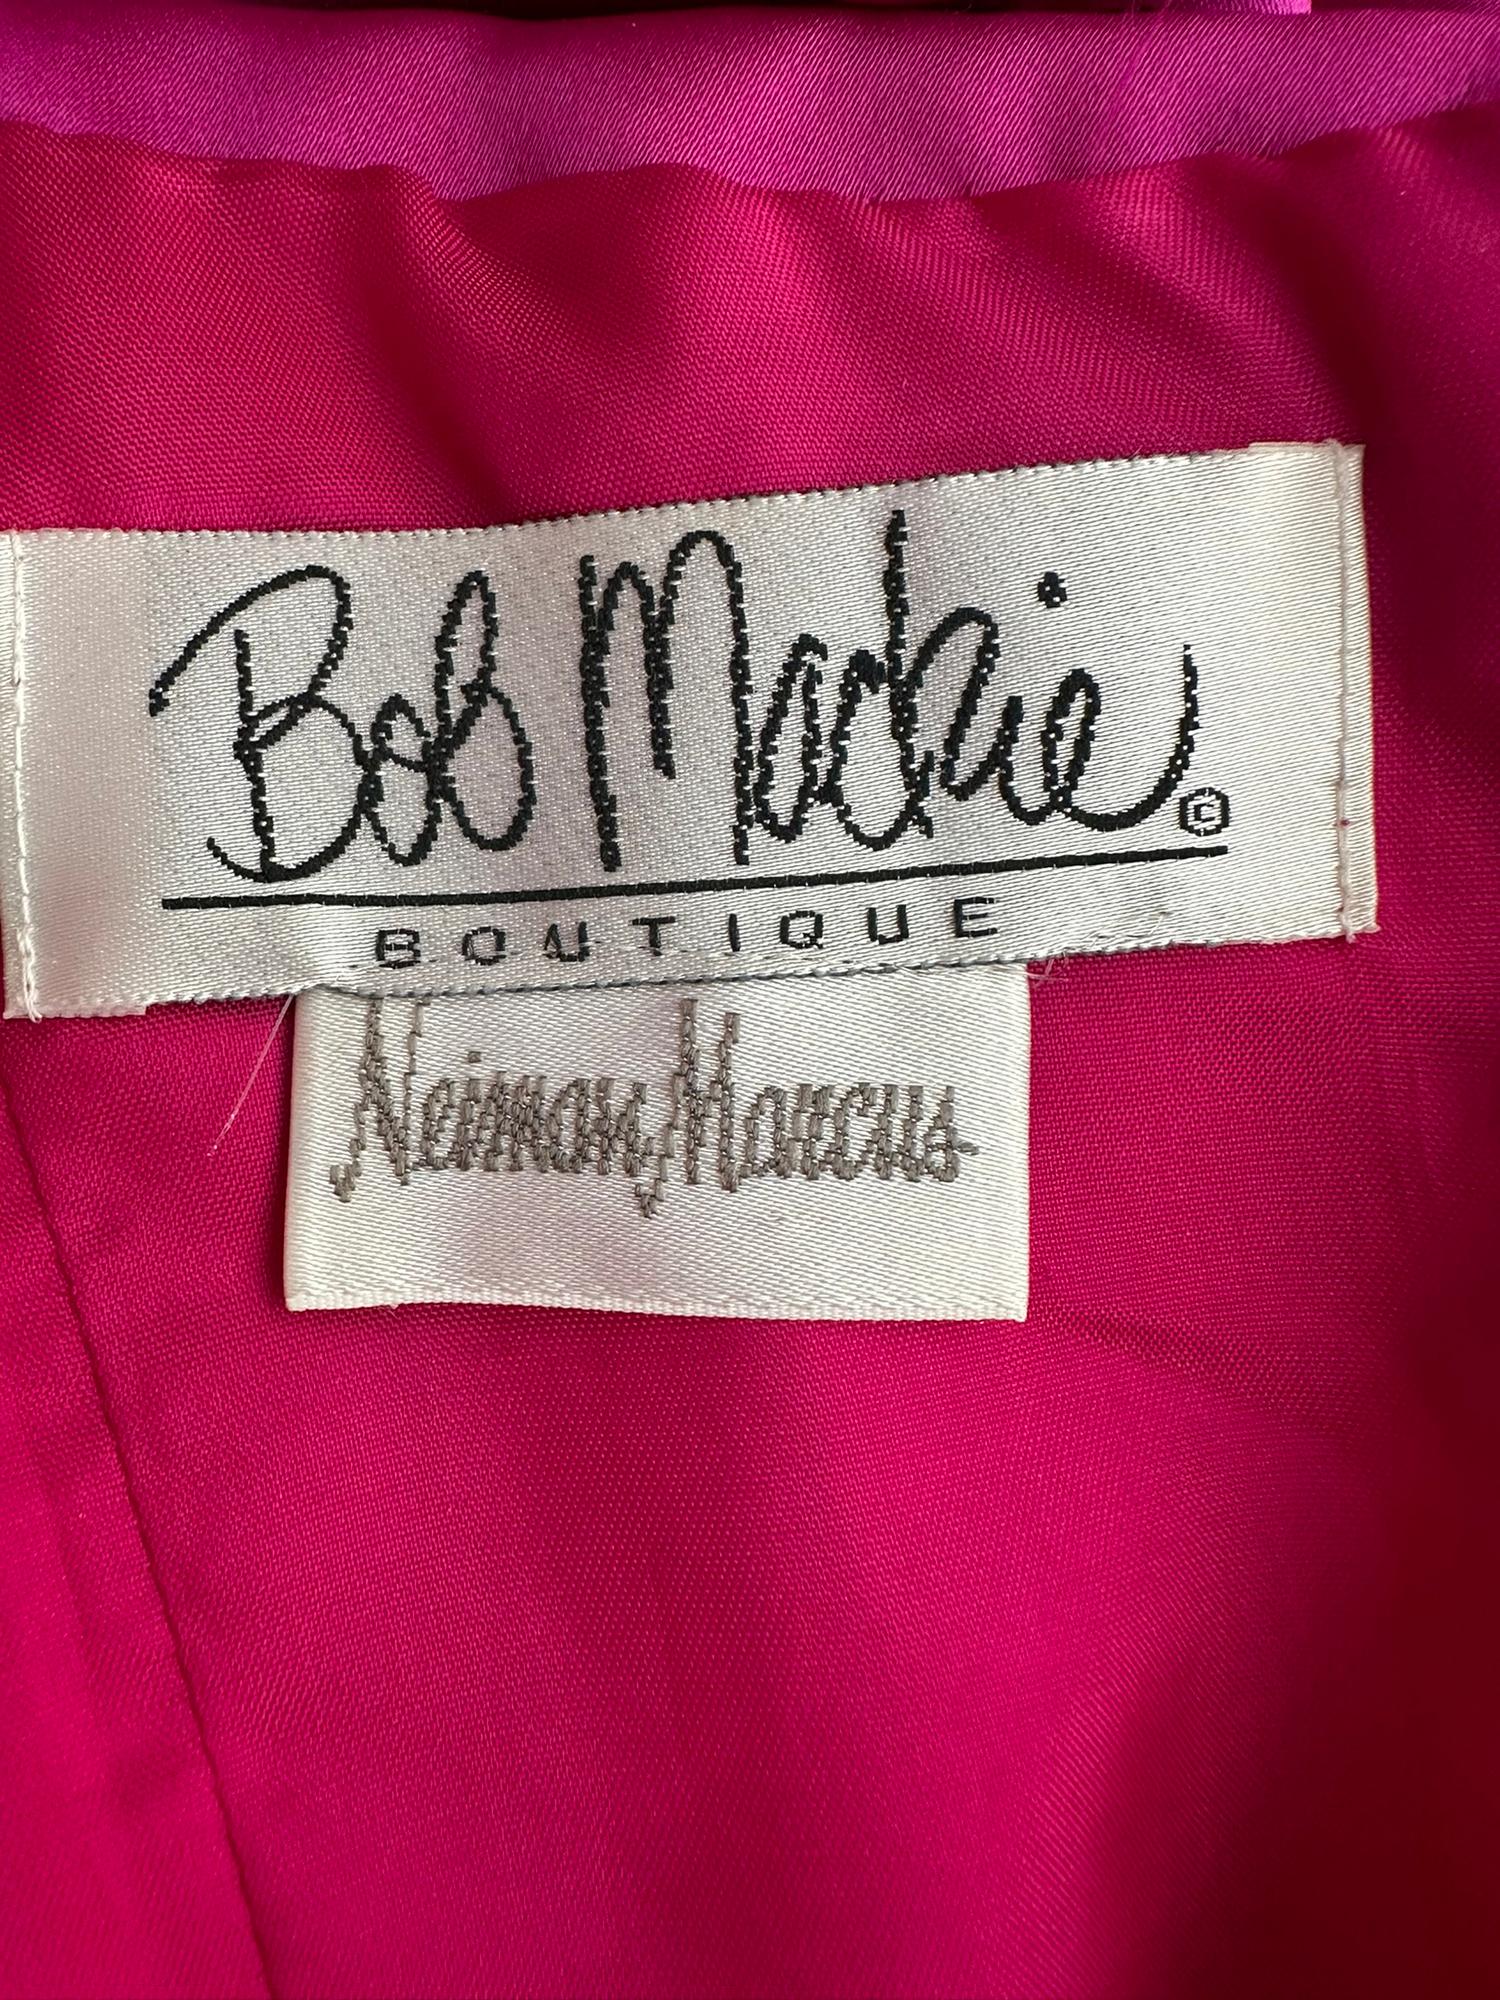 Bob Mackie Strapless Beaded Bodice Semi Full Skirt Evening Dress in Fuchsia 6  For Sale 7